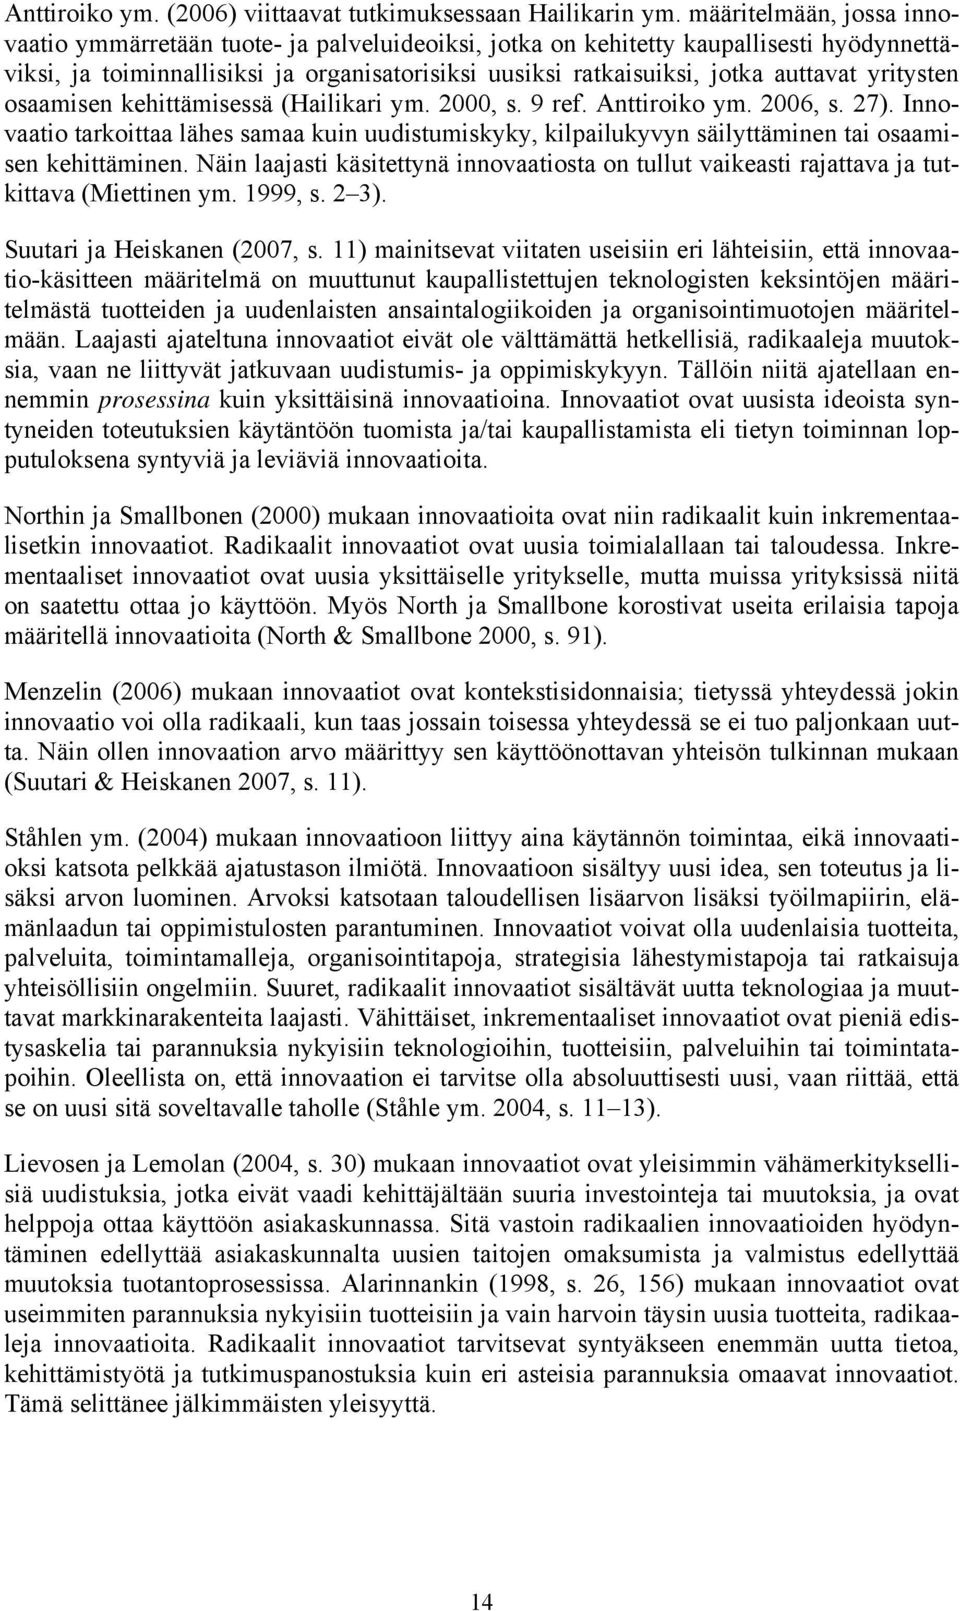 yritysten osaamisen kehittämisessä (Hailikari ym. 2000, s. 9 ref. Anttiroiko ym. 2006, s. 27).